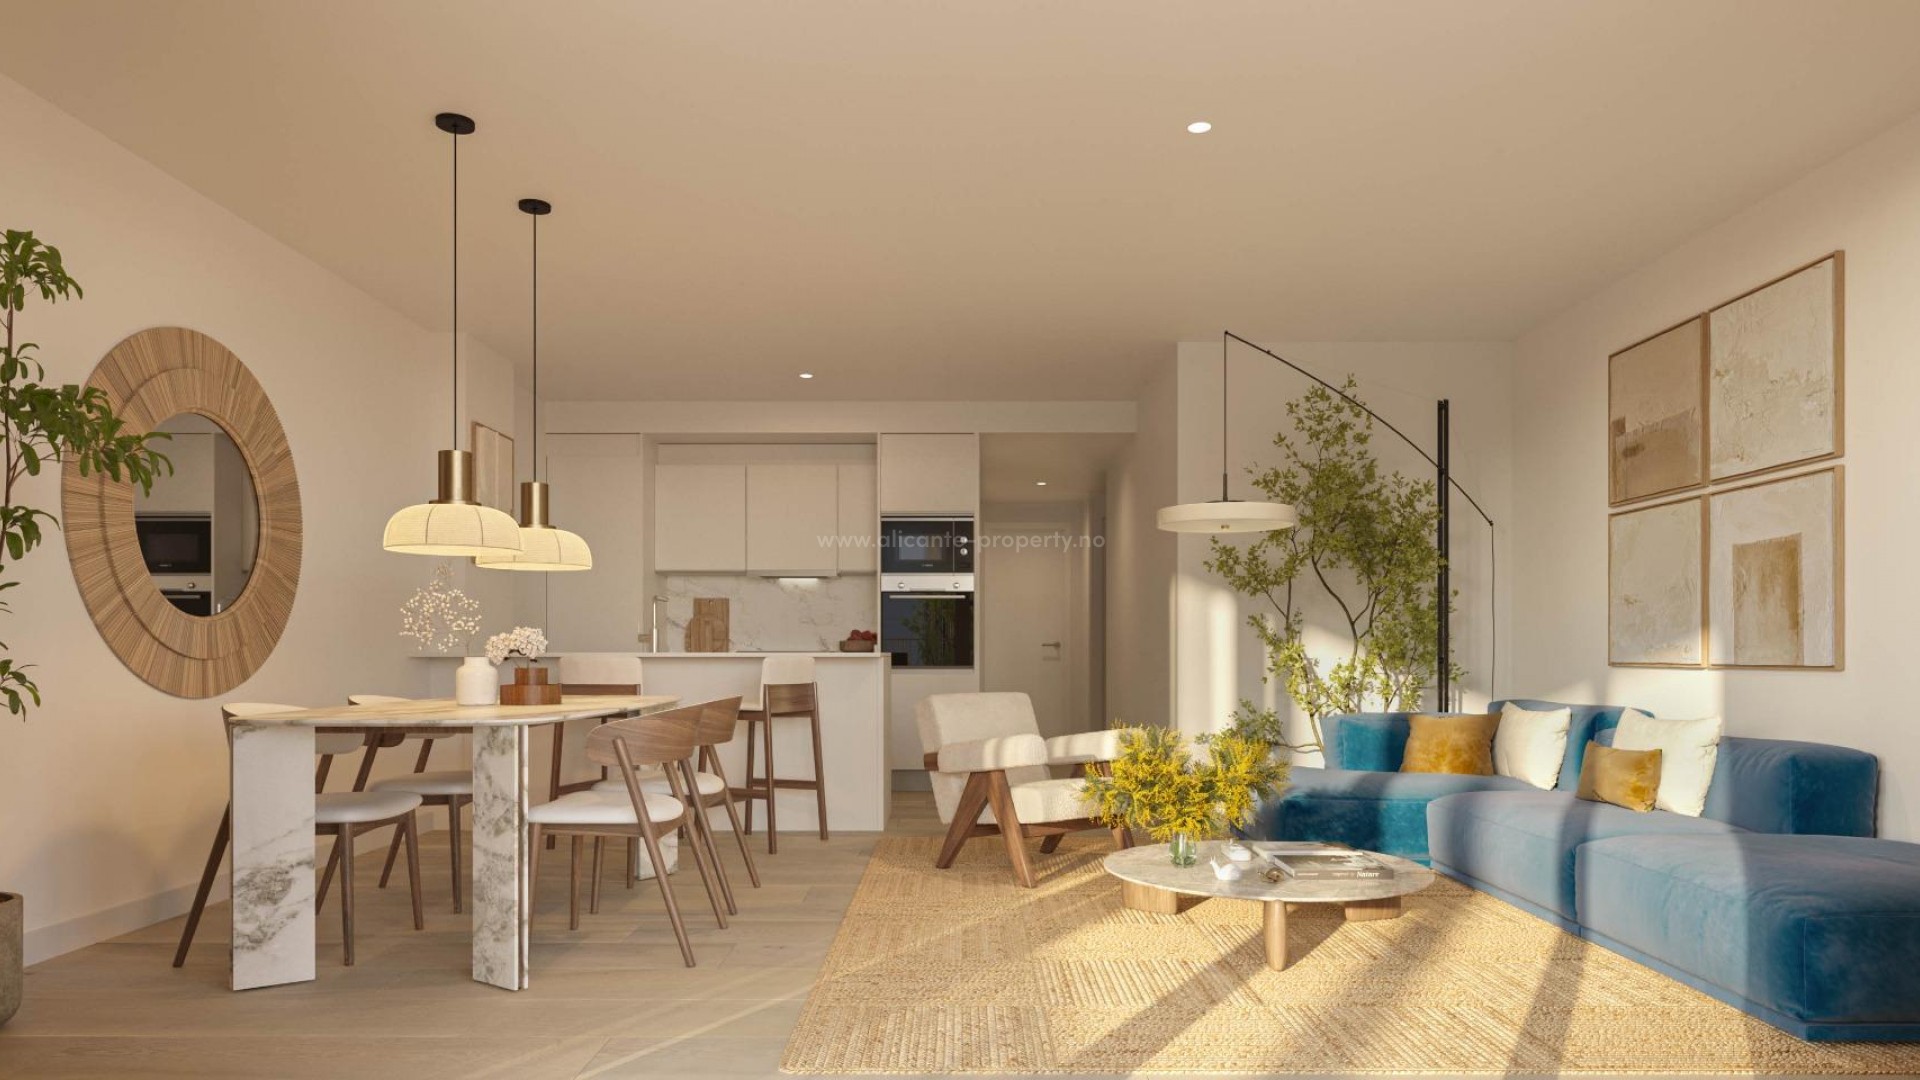 Eksklusive nye boliger leiligheter/rekkehus i El Vergel ved Denia, 2/3 soverom, 2 bad, hver bolig har sine egne private områder, både innendørs og utendørs